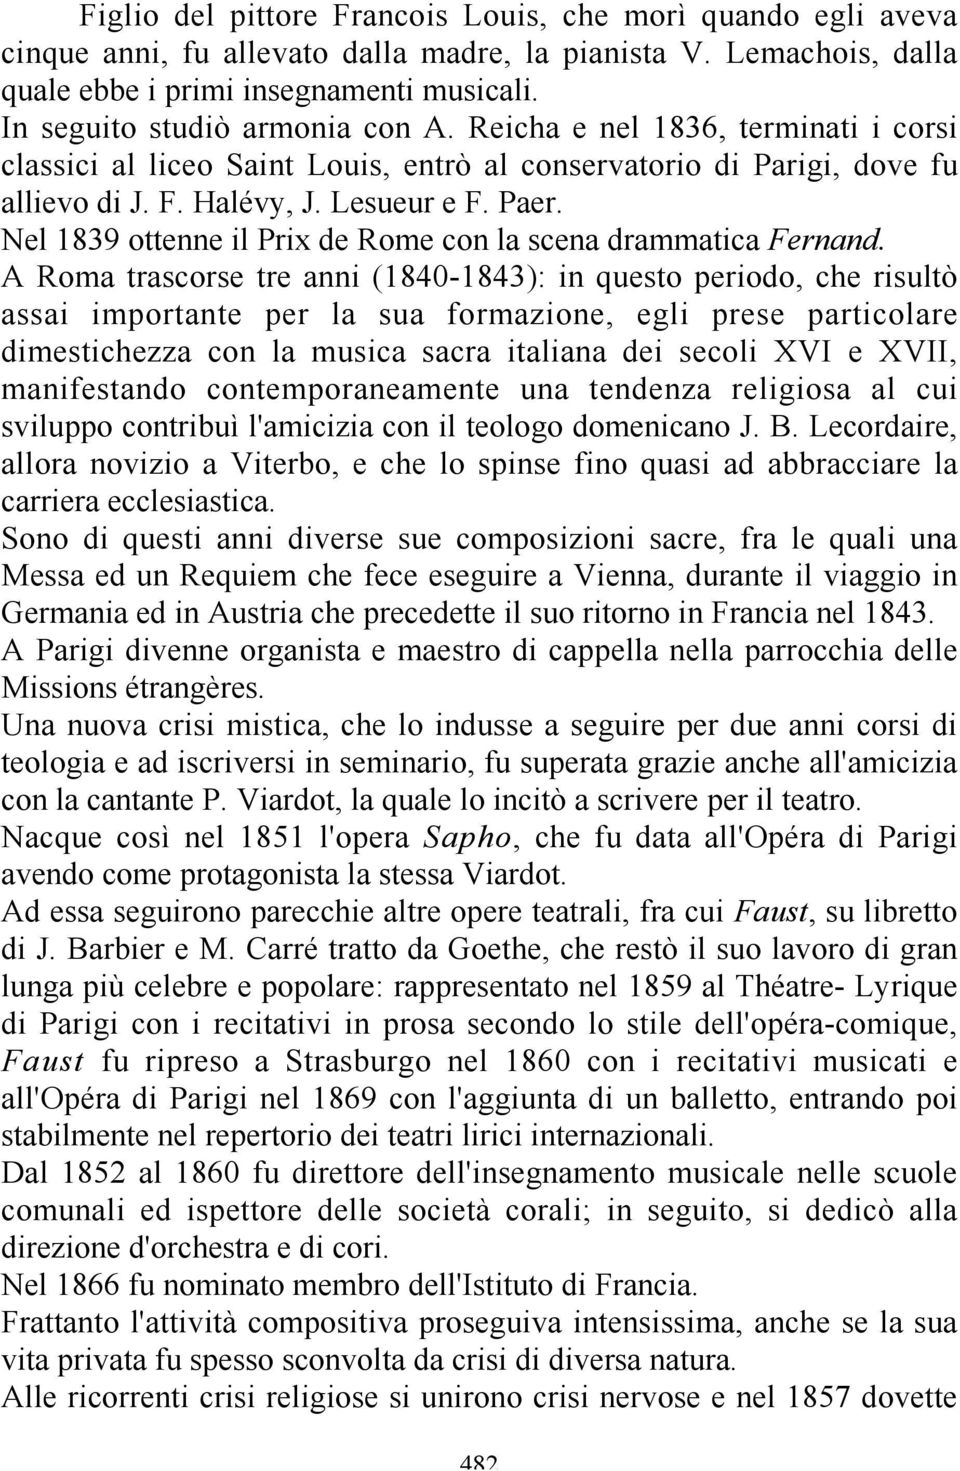 Nel 1839 ottenne il Prix de Rome con la scena drammatica Fernand.